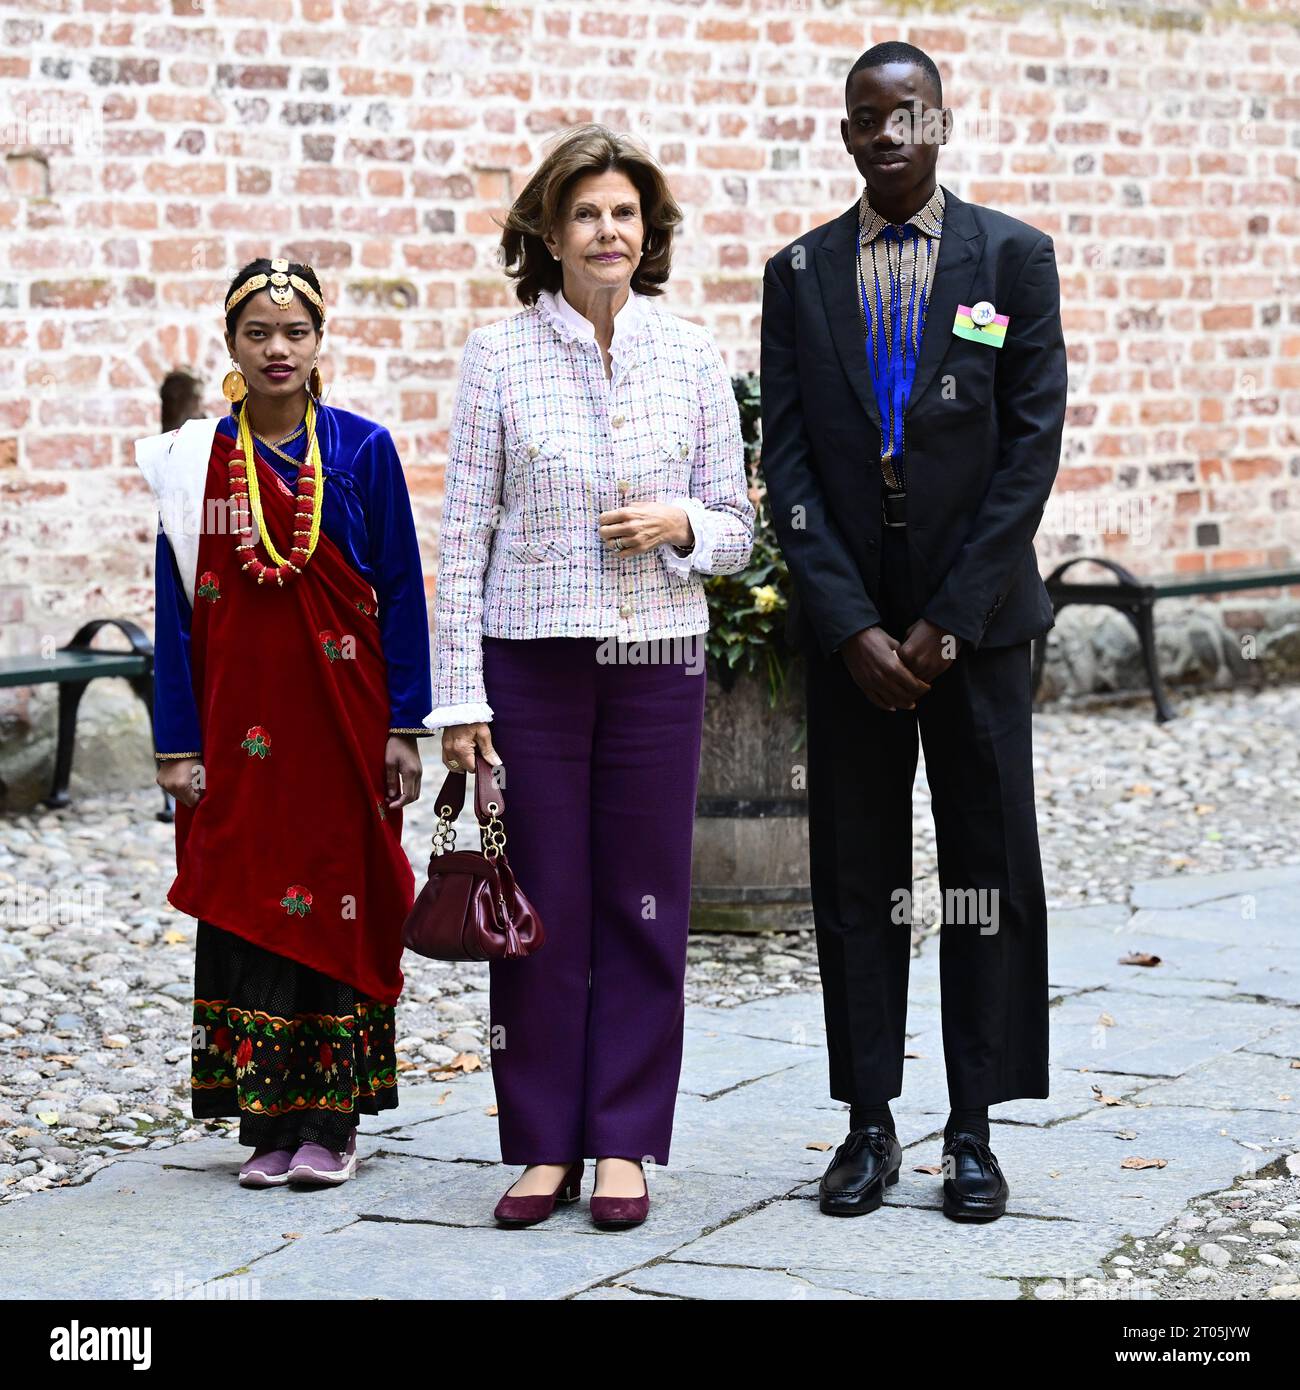 Bindu, 15 ans du Népal, et Kwame, 16 ans du Ghana, ont reçu la reine Silvia à leur arrivée à la cérémonie de remise des prix pour les enfants du monde Banque D'Images